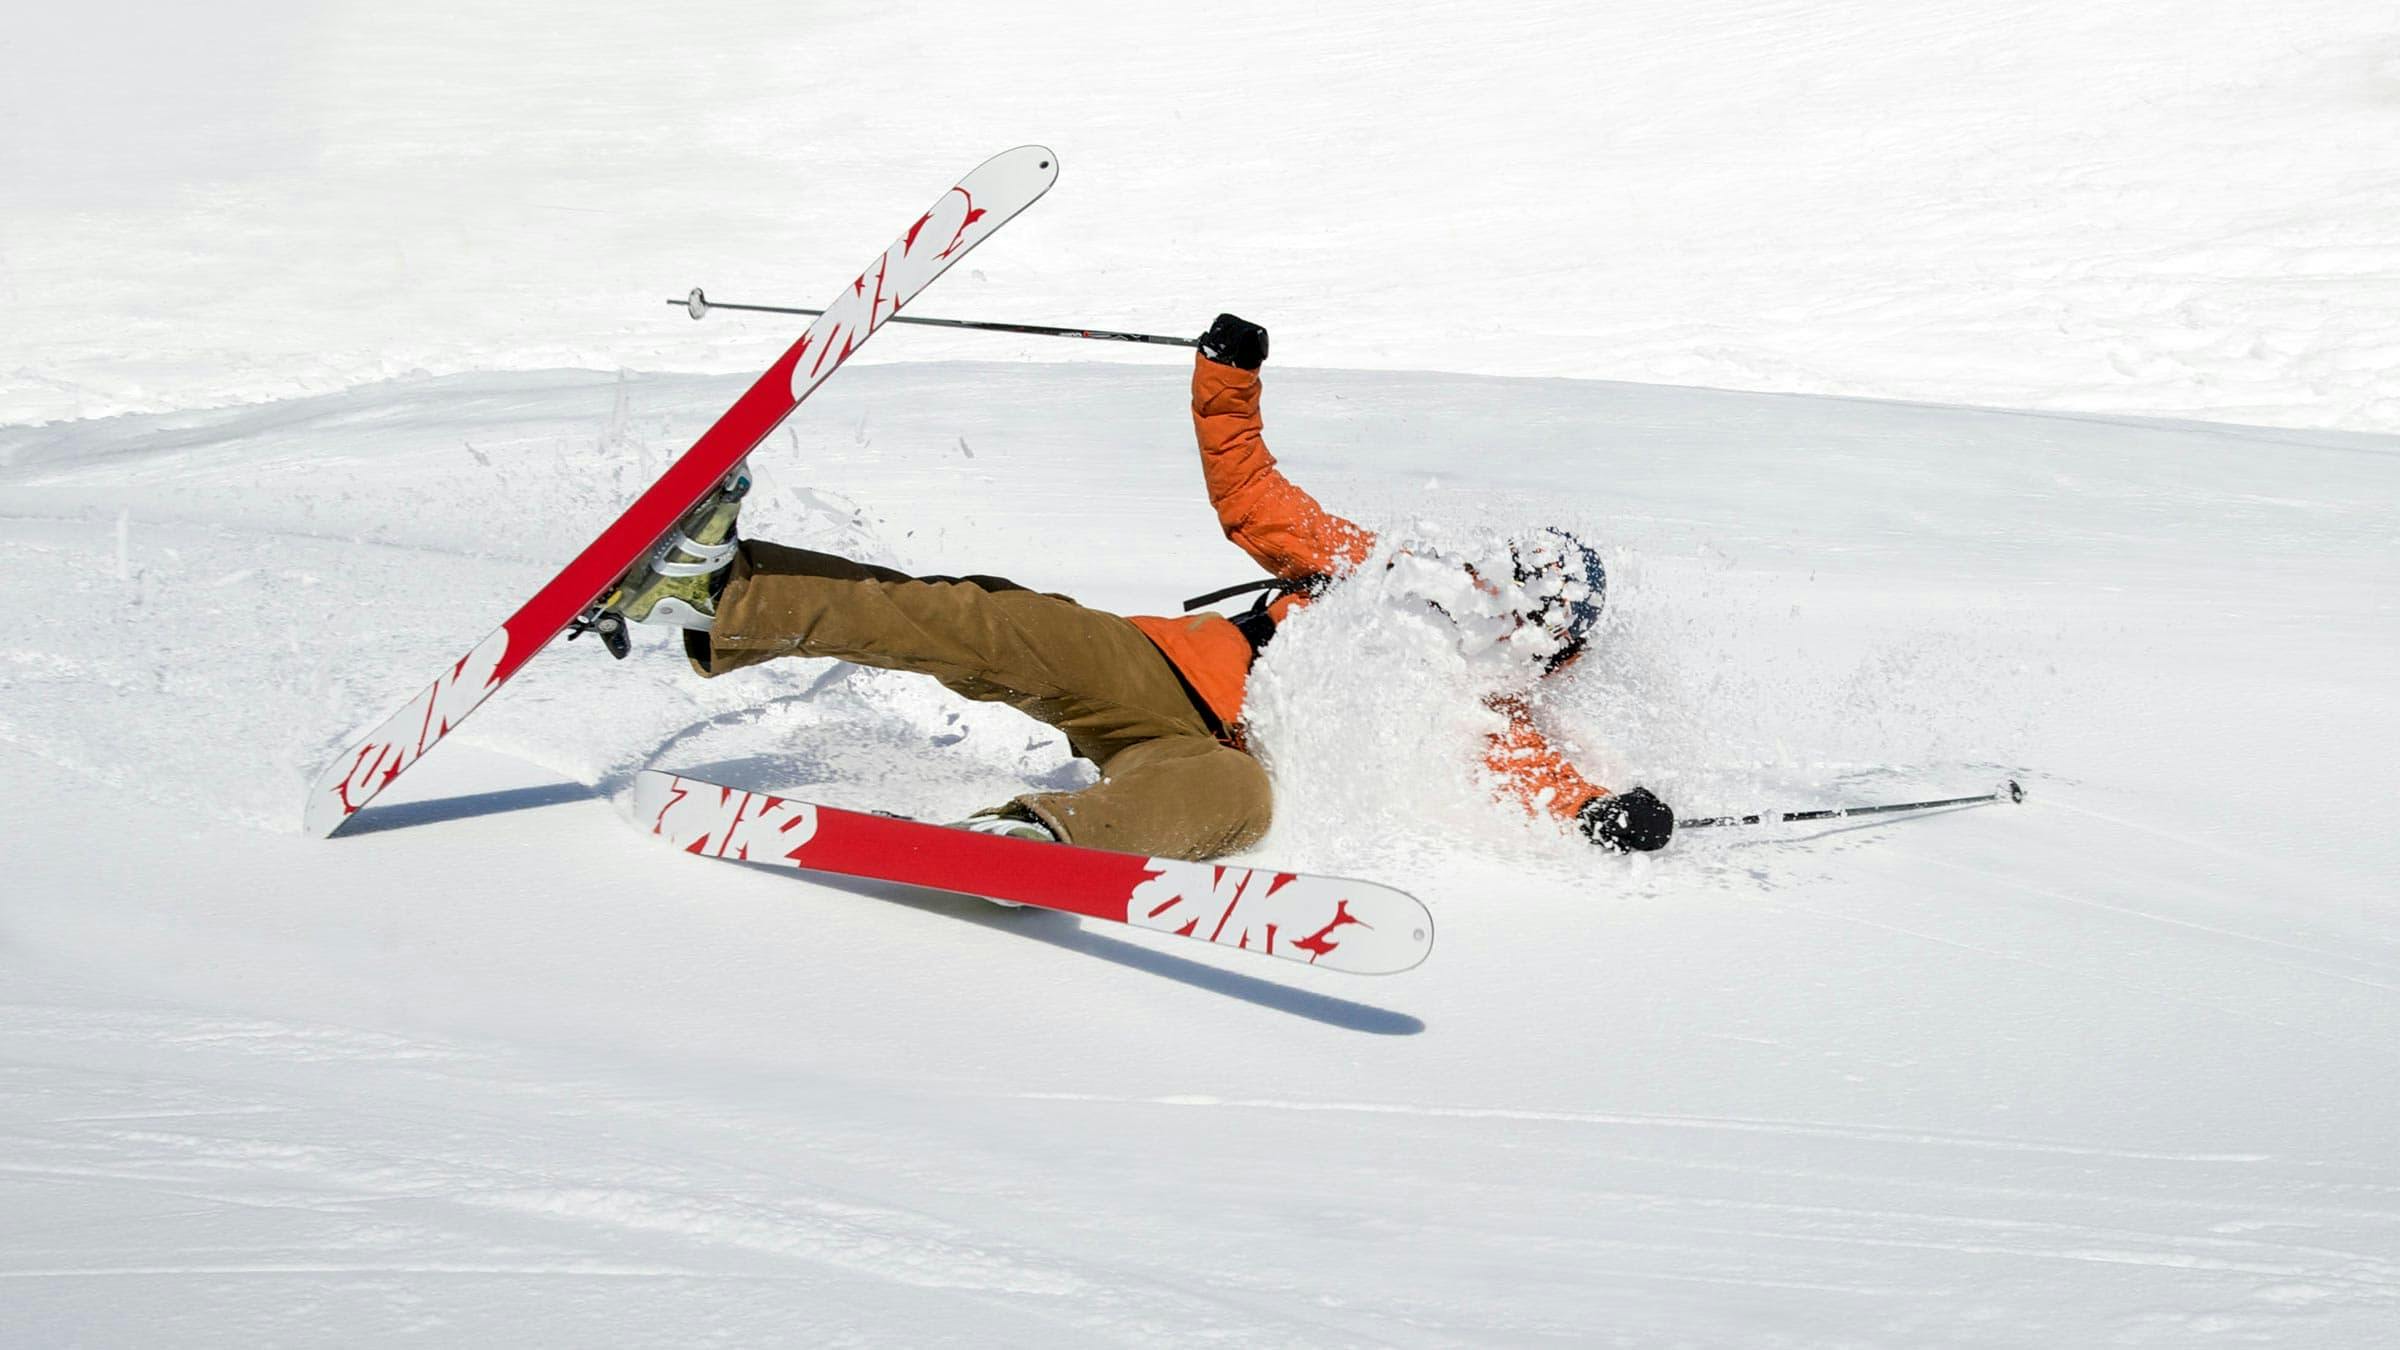 Skier falling